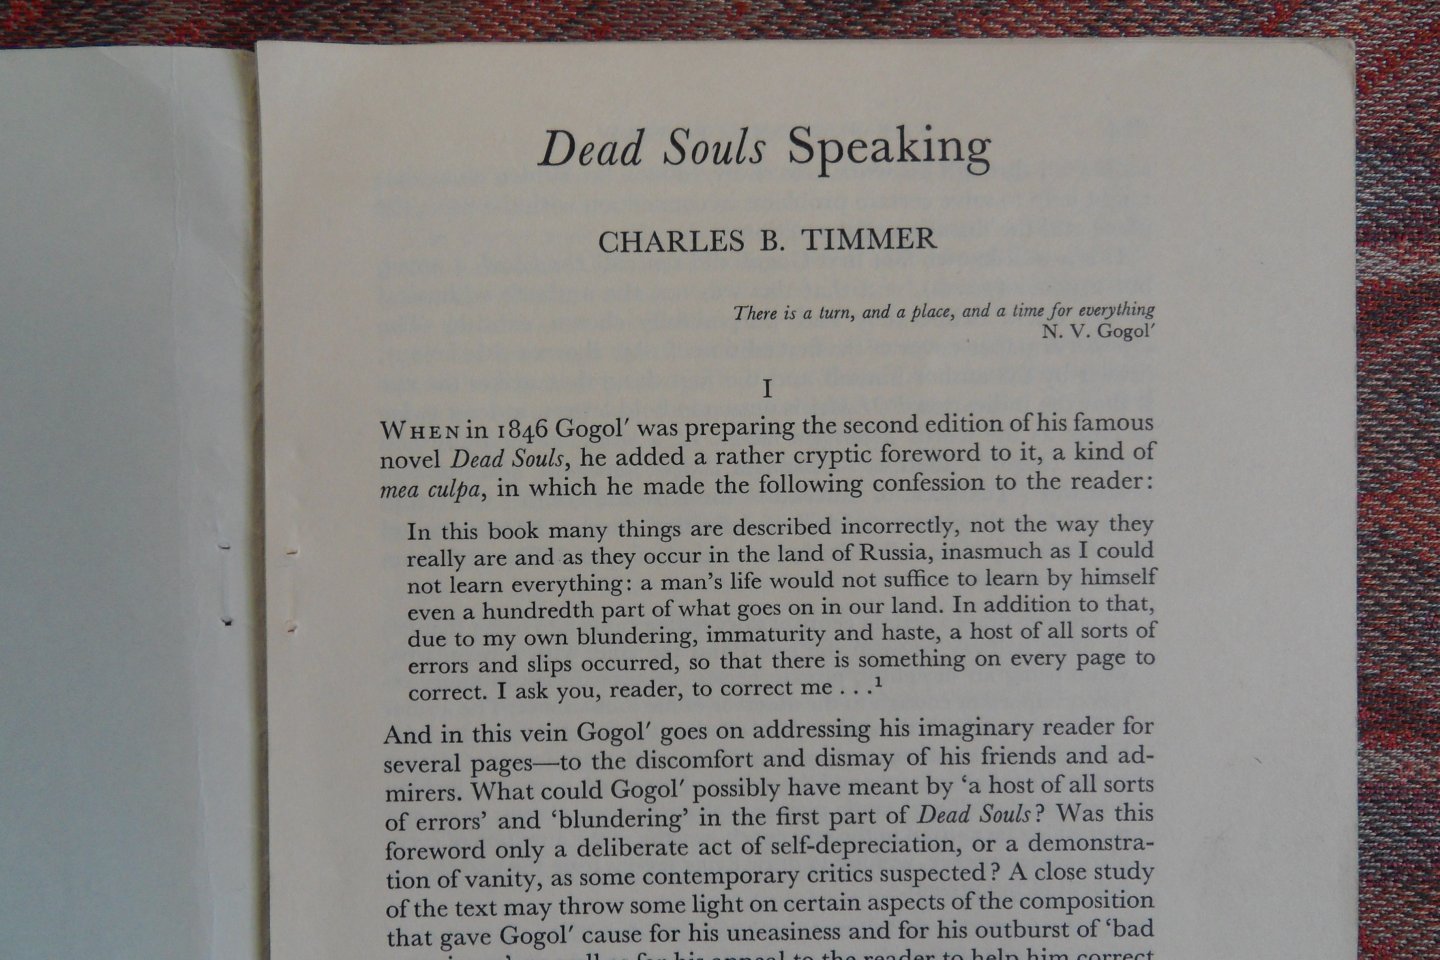 Timmer, Charles B. [ Met gesigneerde opdracht voor de componsit Wilhelm Rettich 1892/1988 ]. - Dead Souls Speaking (paper on this book of N.V. Gogol).